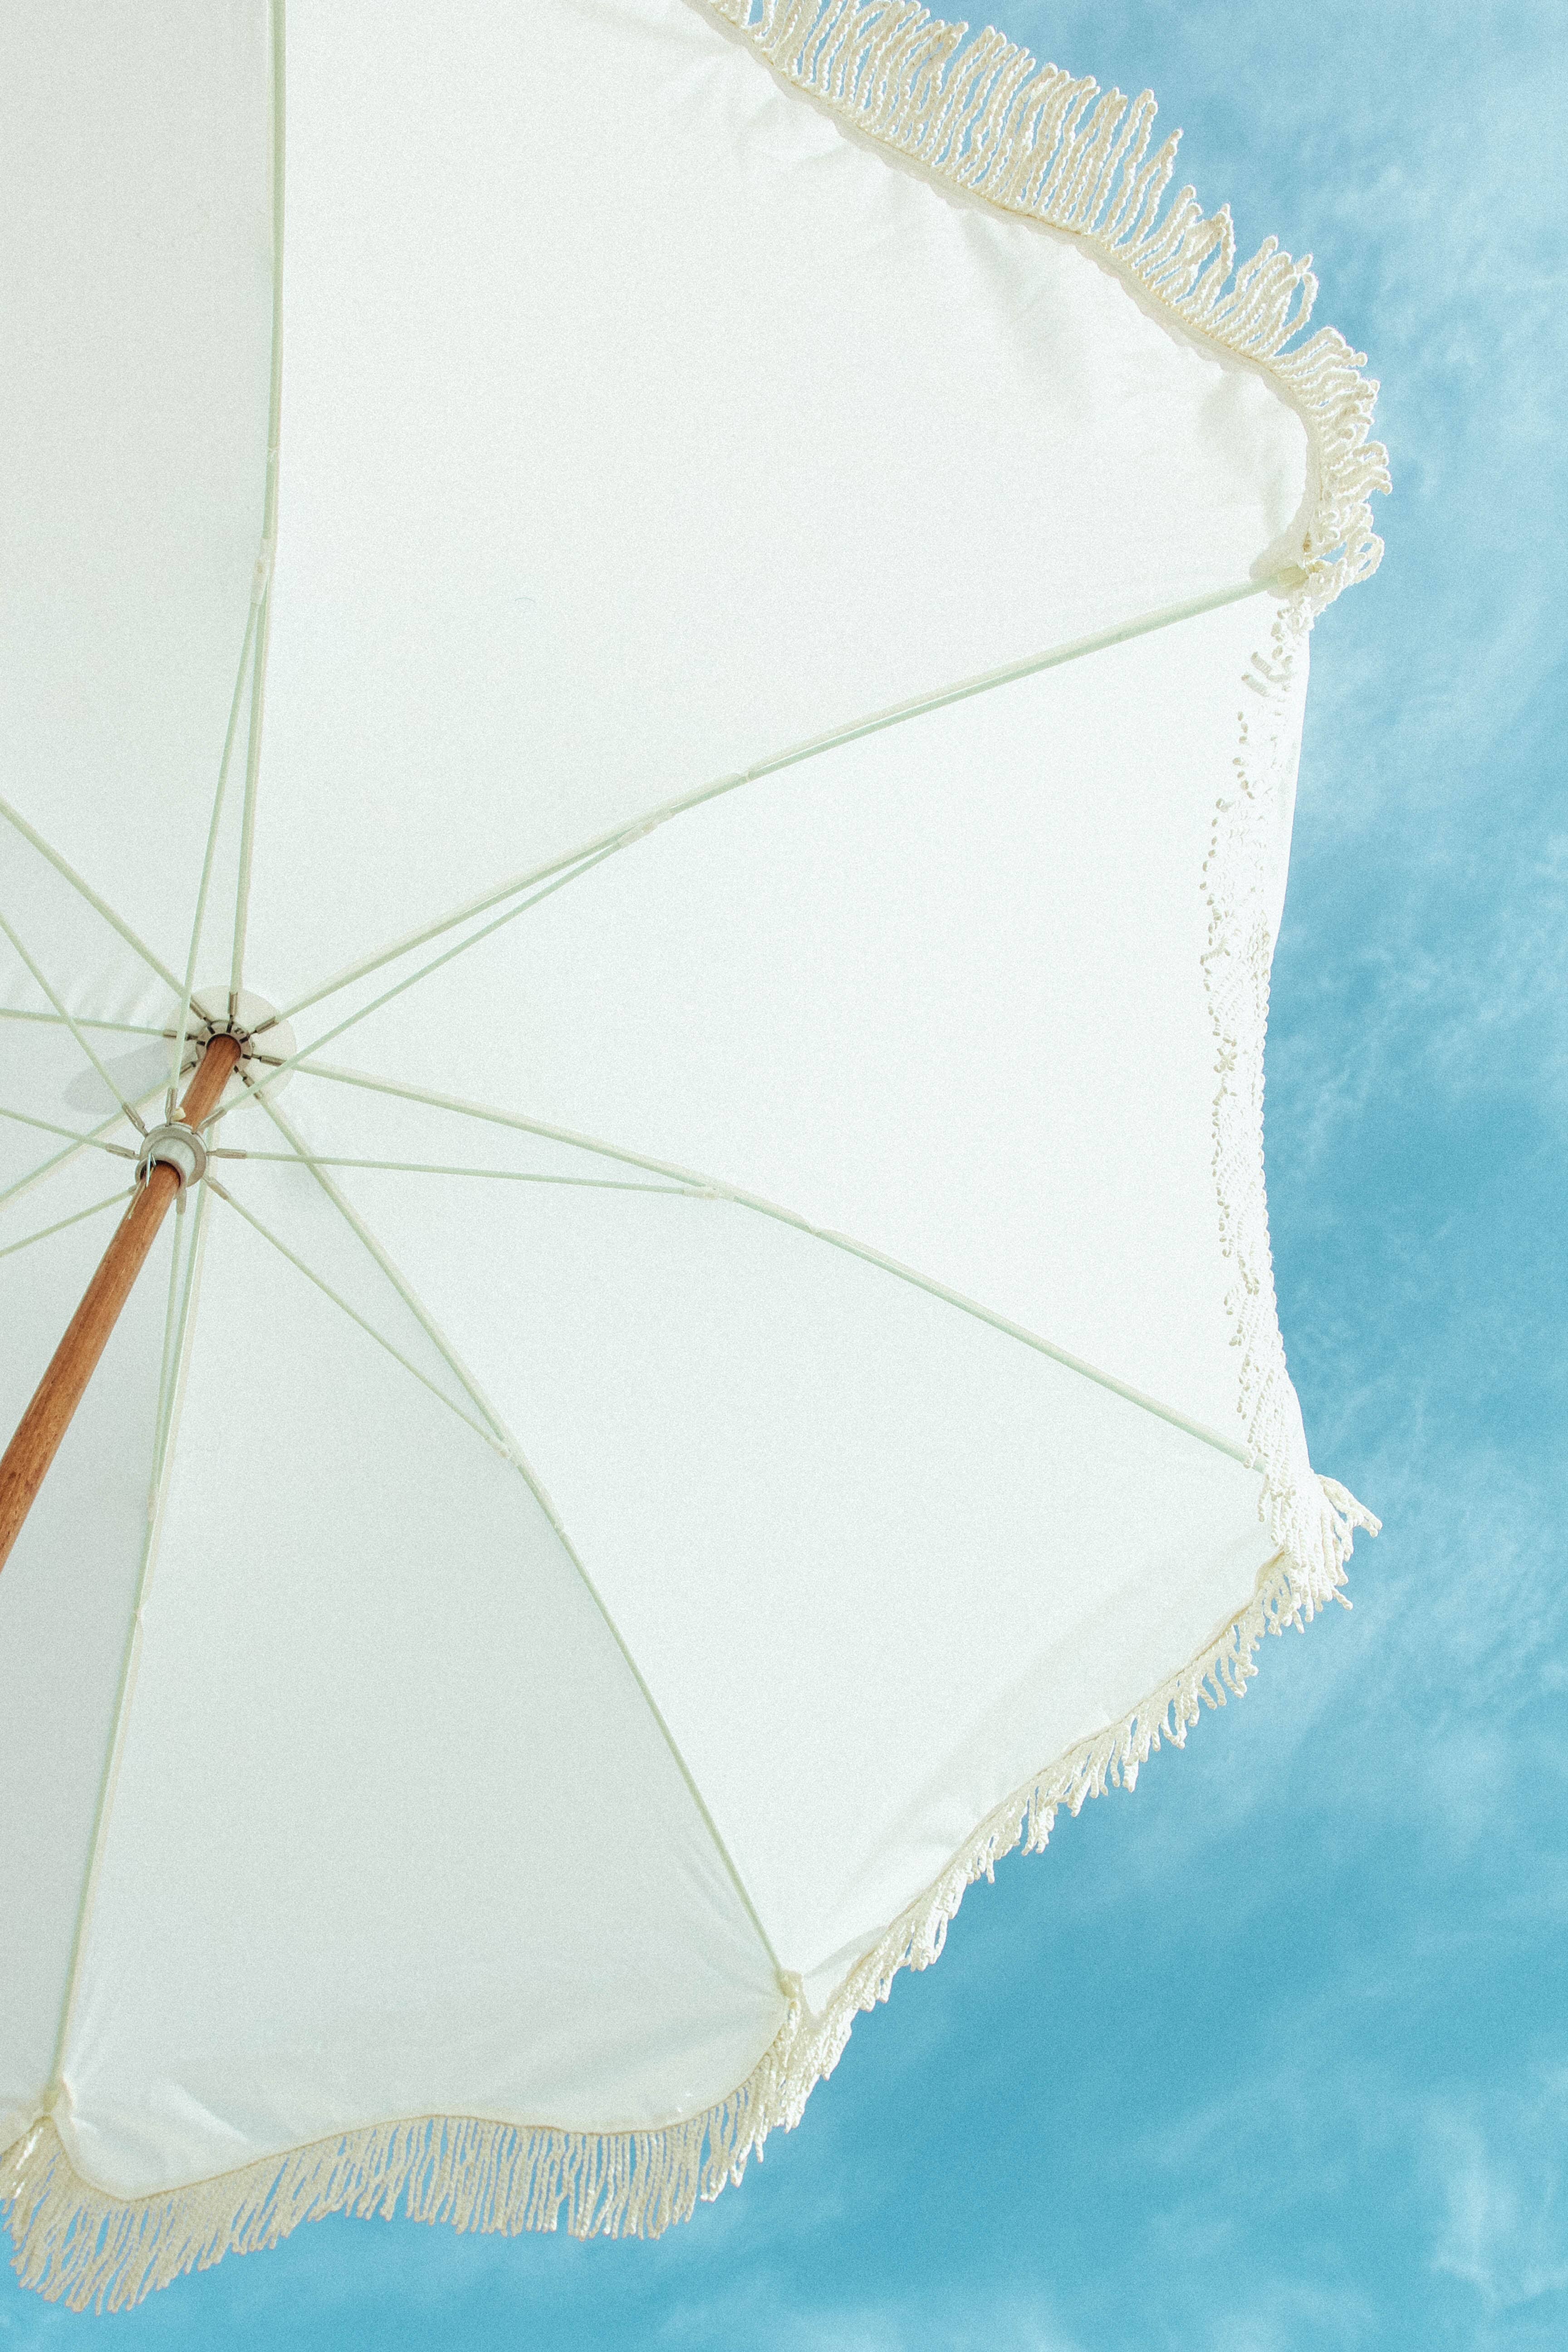 The Premium Beach Umbrella - Antique White Premium Beach Umbrella Business & Pleasure Co 